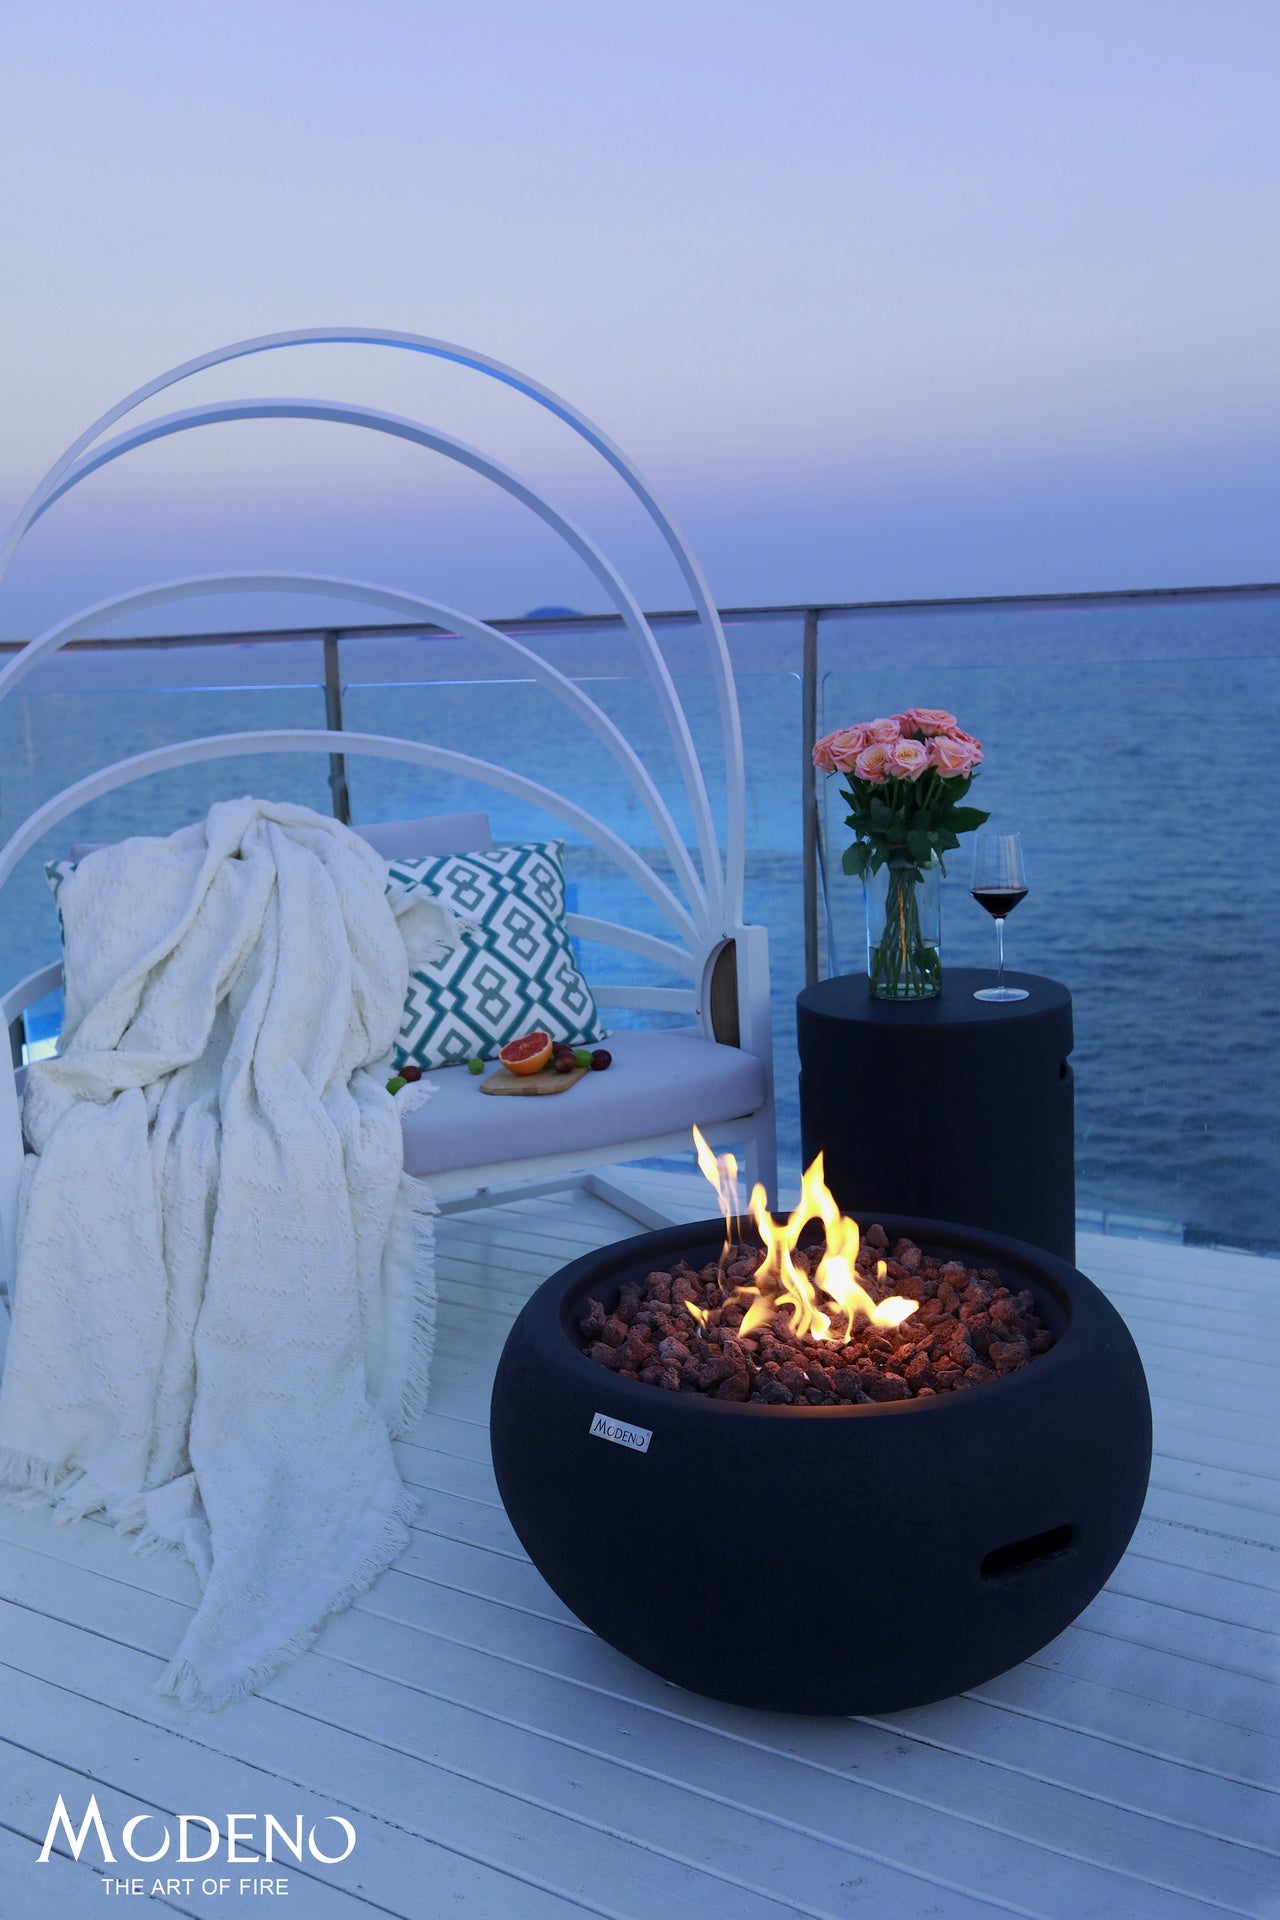 Feuerschale YORK von MODENO - Leistungsstarker Gasbrenner, modernes Design und robuste Konstruktion für gemütliche Abende im Freien | Gartenmöbelshop.at